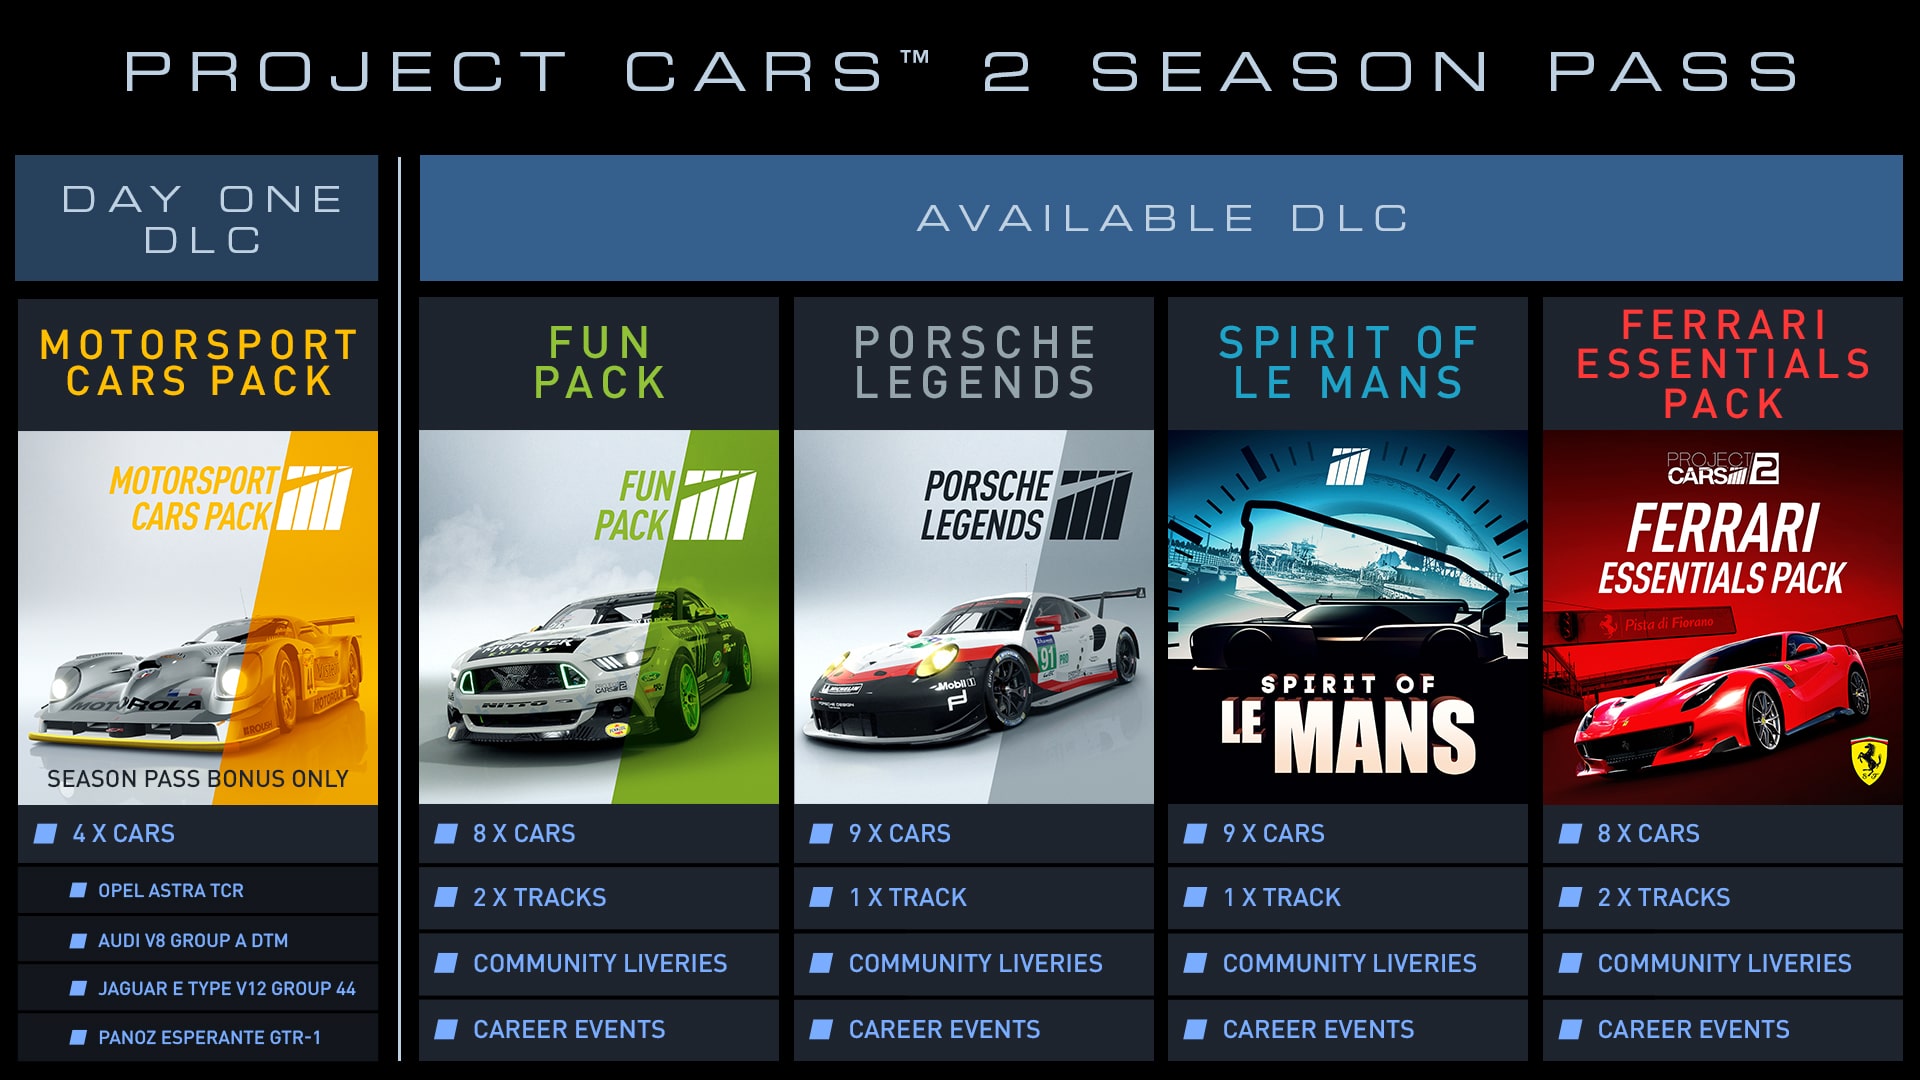 Full Project CARS 2 car list + DLC cars